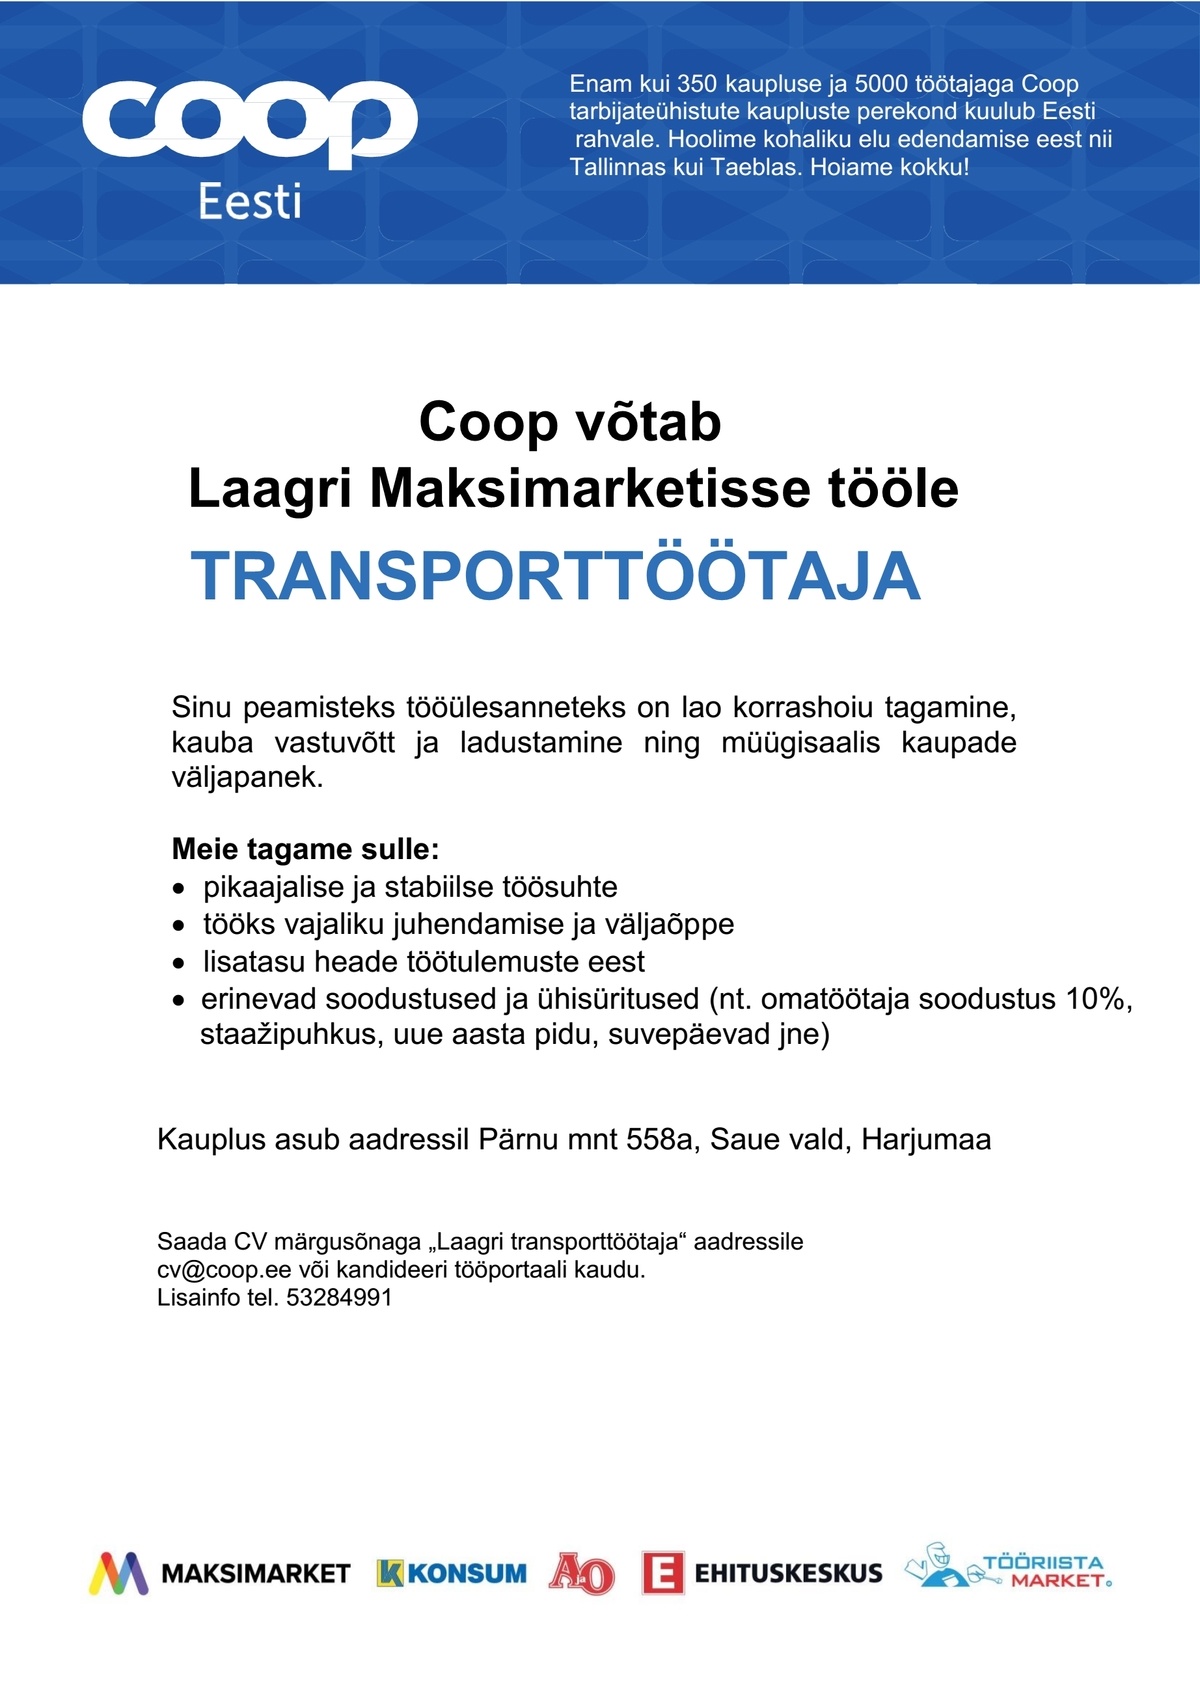 Coop Kaubanduse AS Transporttöötaja (Laagri Maksimarket)